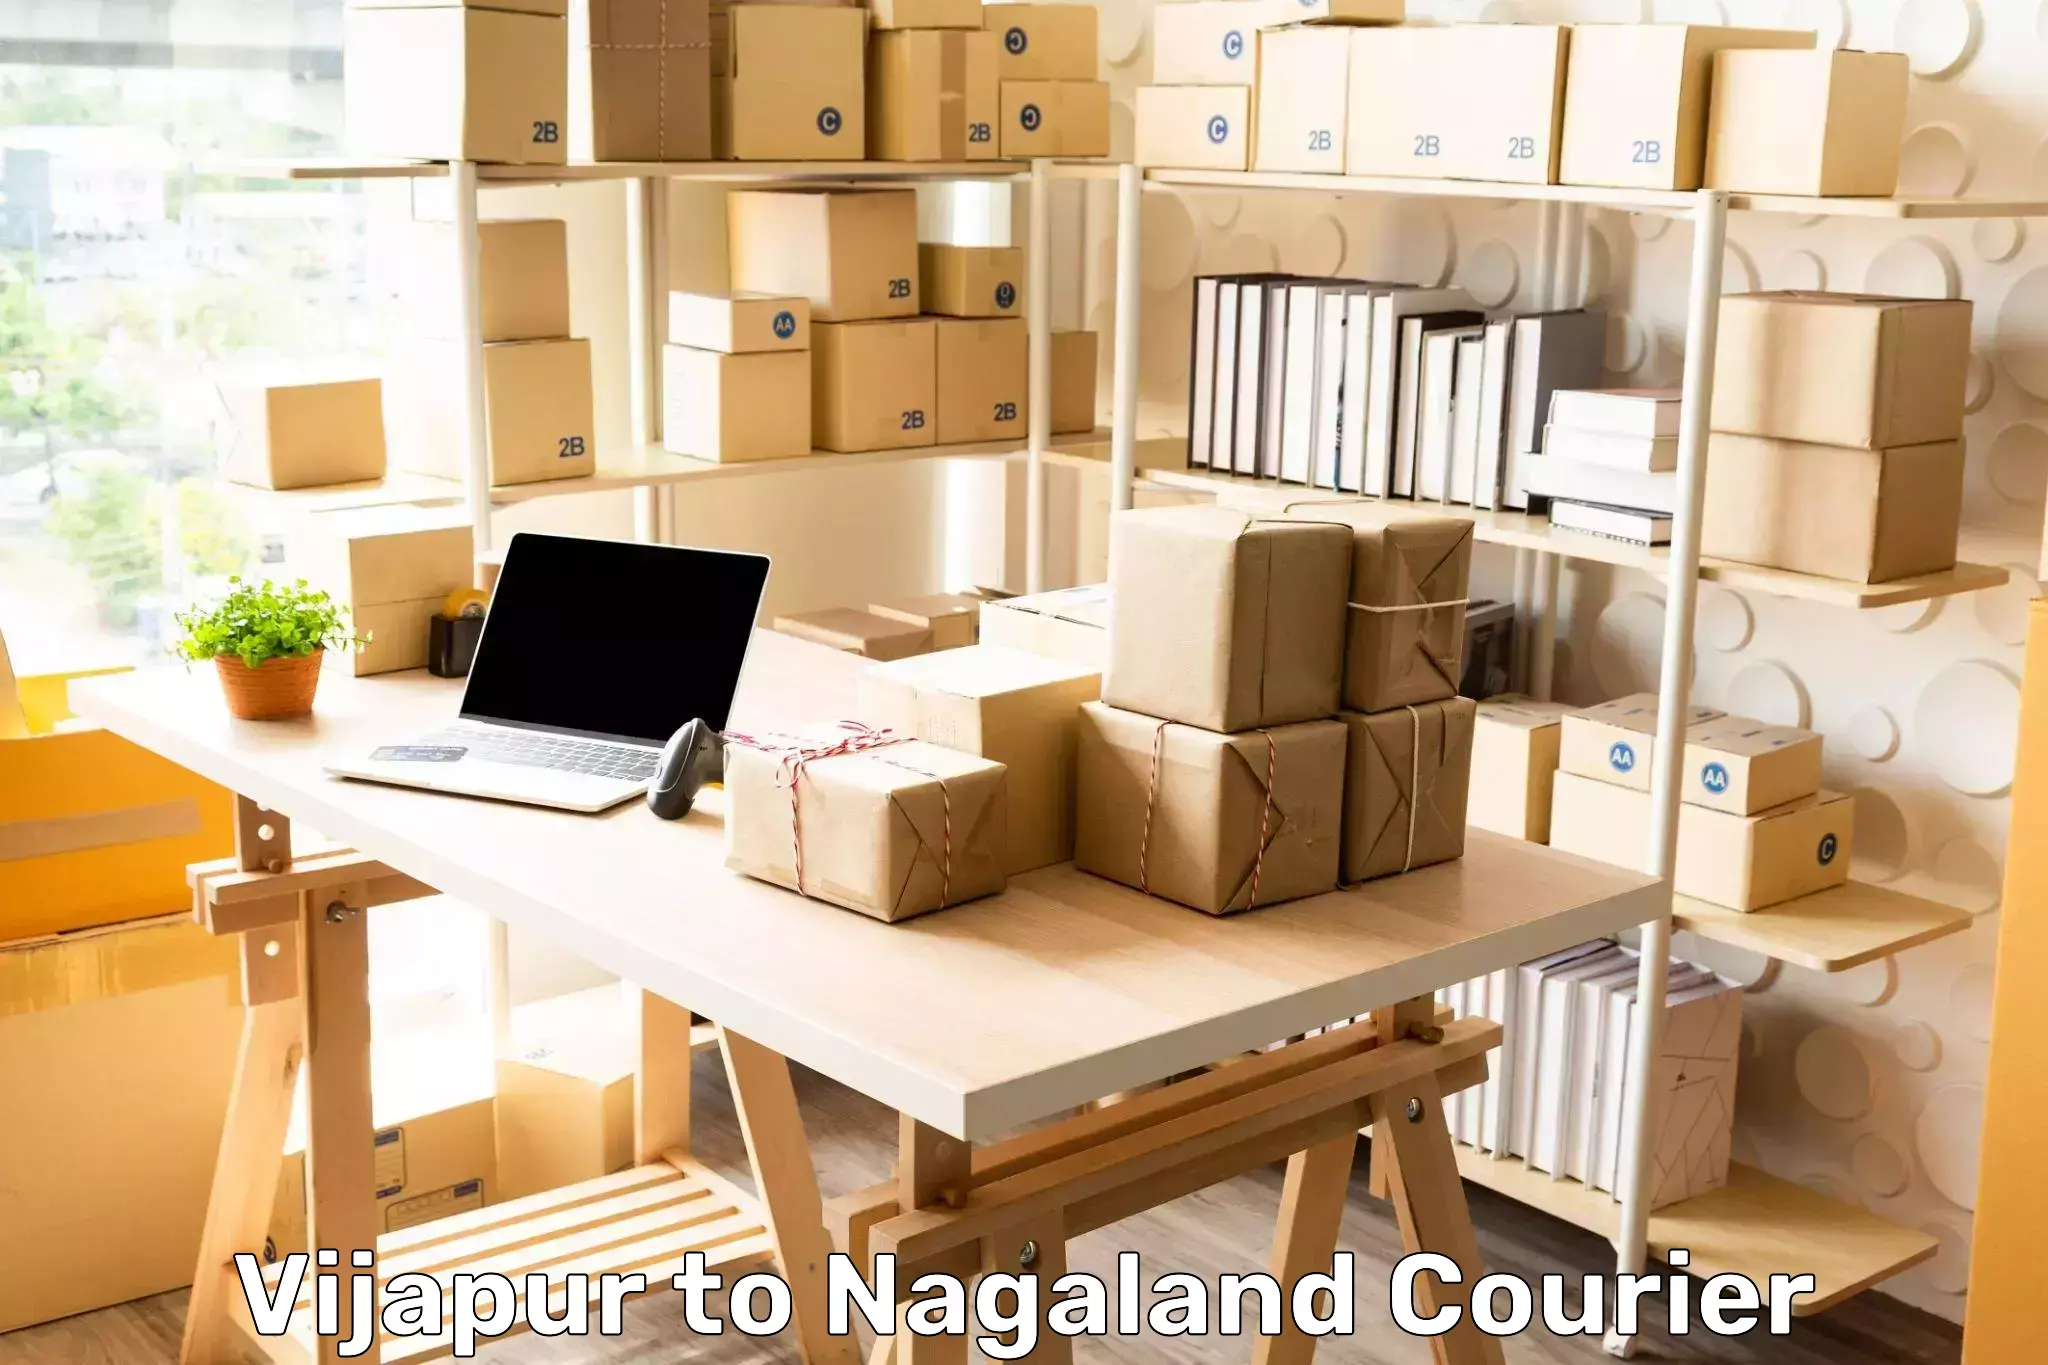 Holiday shipping services Vijapur to Nagaland